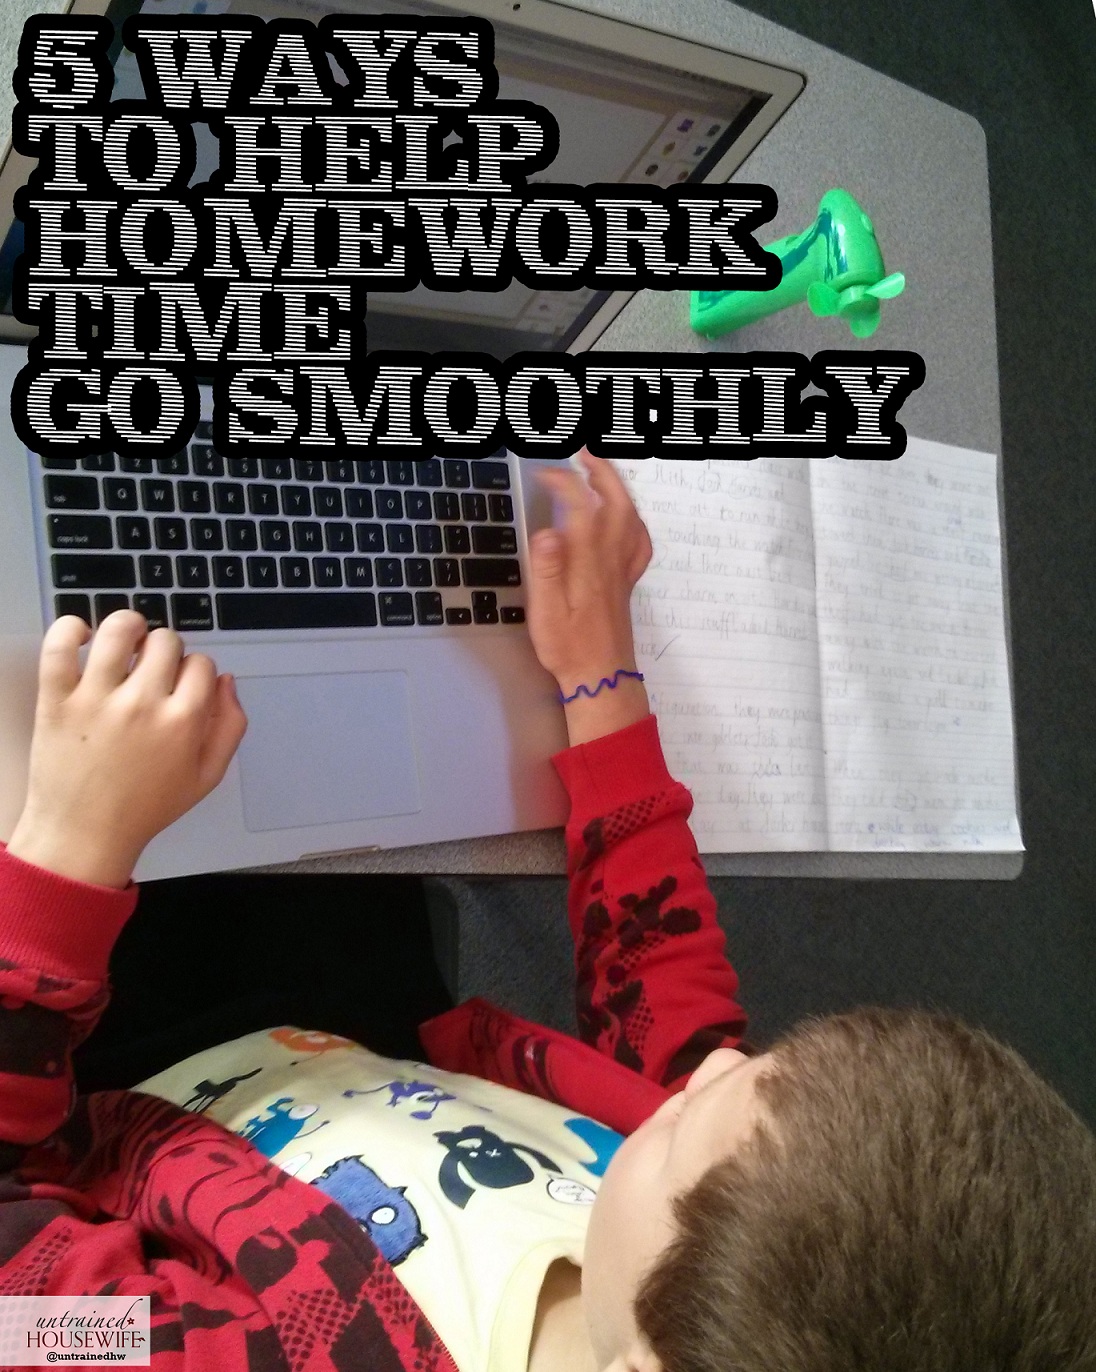 Times homework help